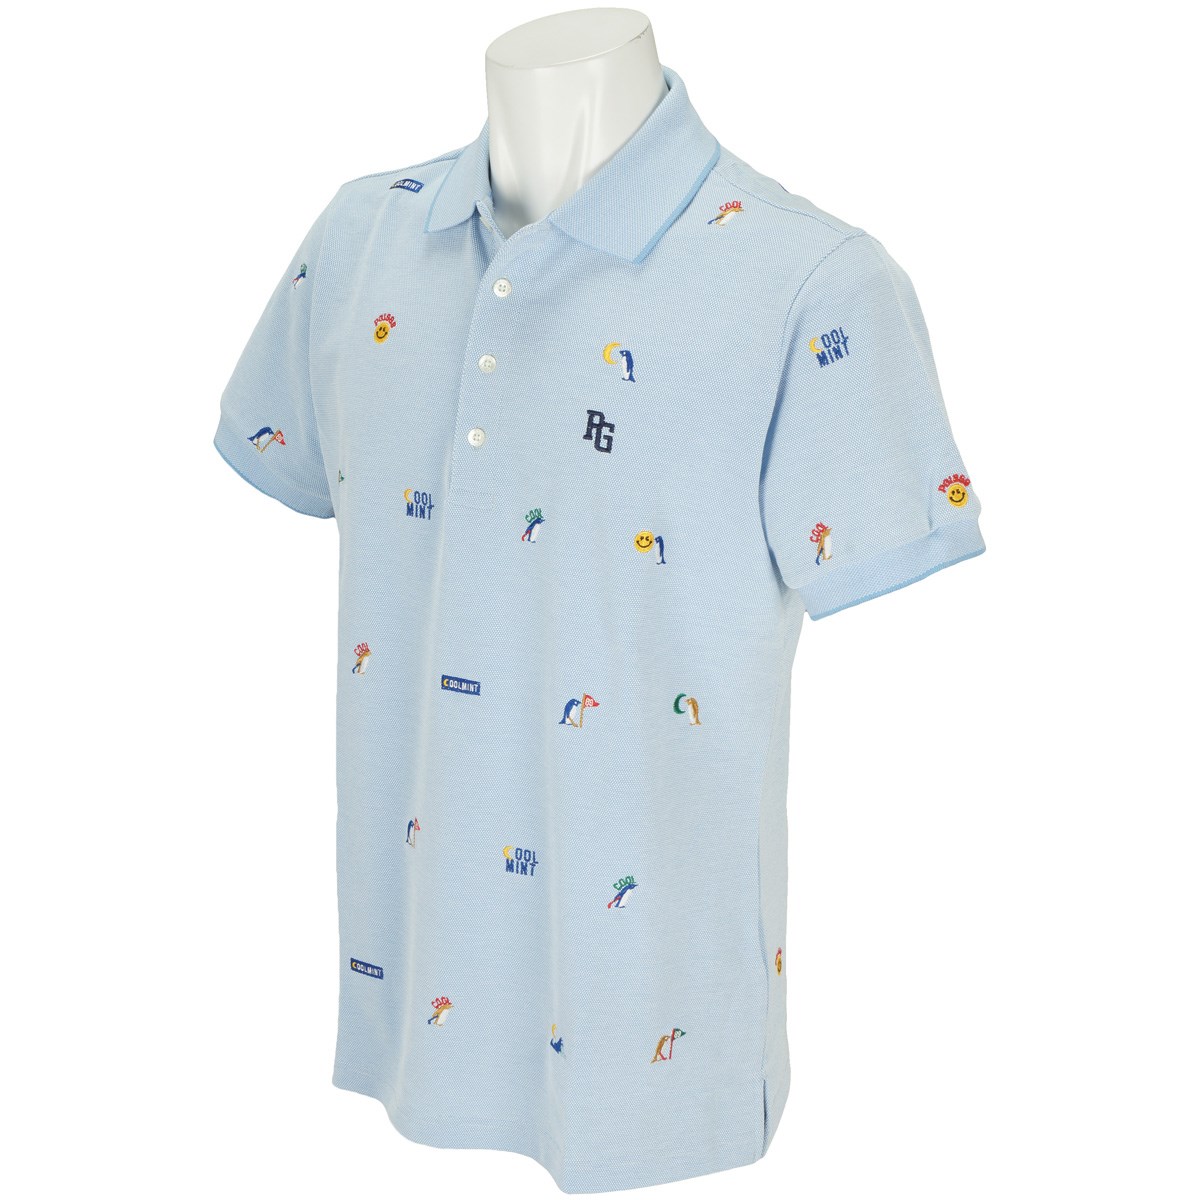 パーリーゲイツ DRY×鹿の子 COOLMINTエンブ 半袖ポロシャツ 